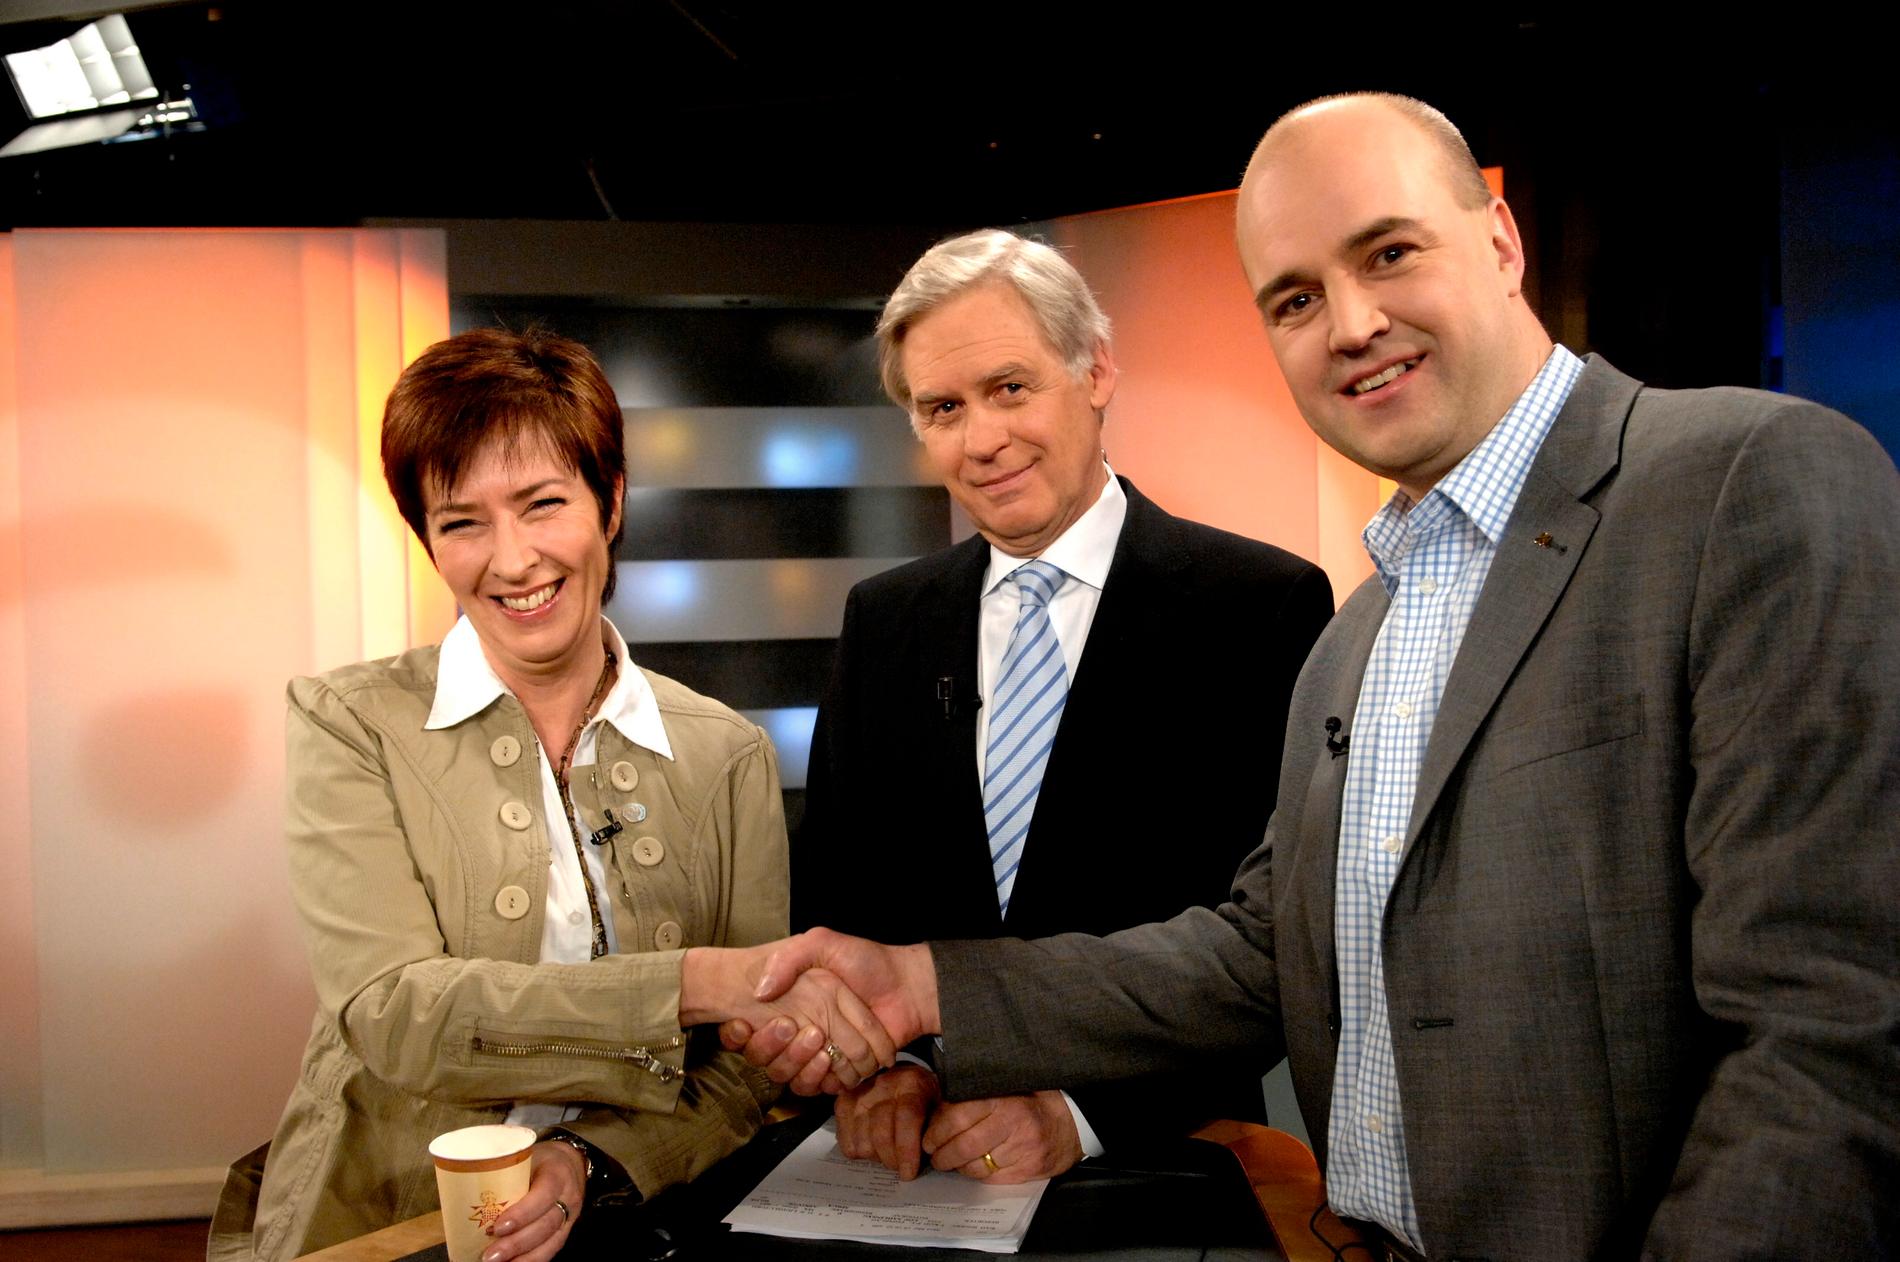 Jarl Alfredius blev en av Aktuellts mest folkkära programledare. Här ses han inför den första partiledardebatten mellan dåvarande S-ledaren Mona Sahlin och M-ledaren Fredrik Reinfeldt 2007.